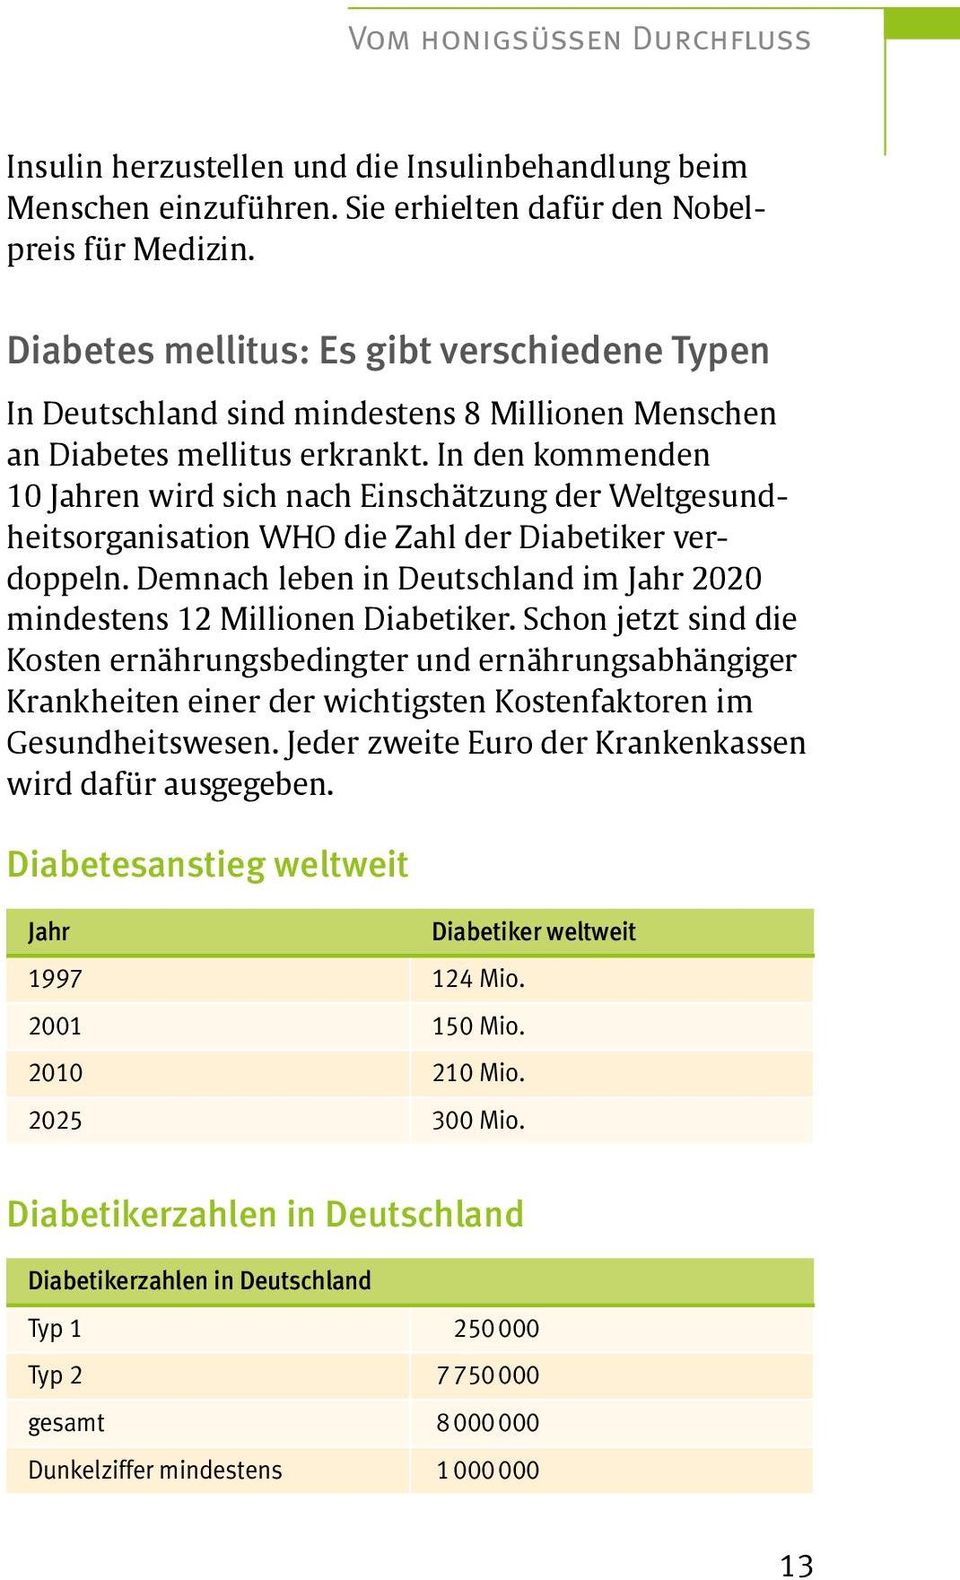 In den kommenden 10 Jahren wird sich nach Einschätzung der Weltgesundheitsorganisation WHO die Zahl der Diabetiker verdoppeln.